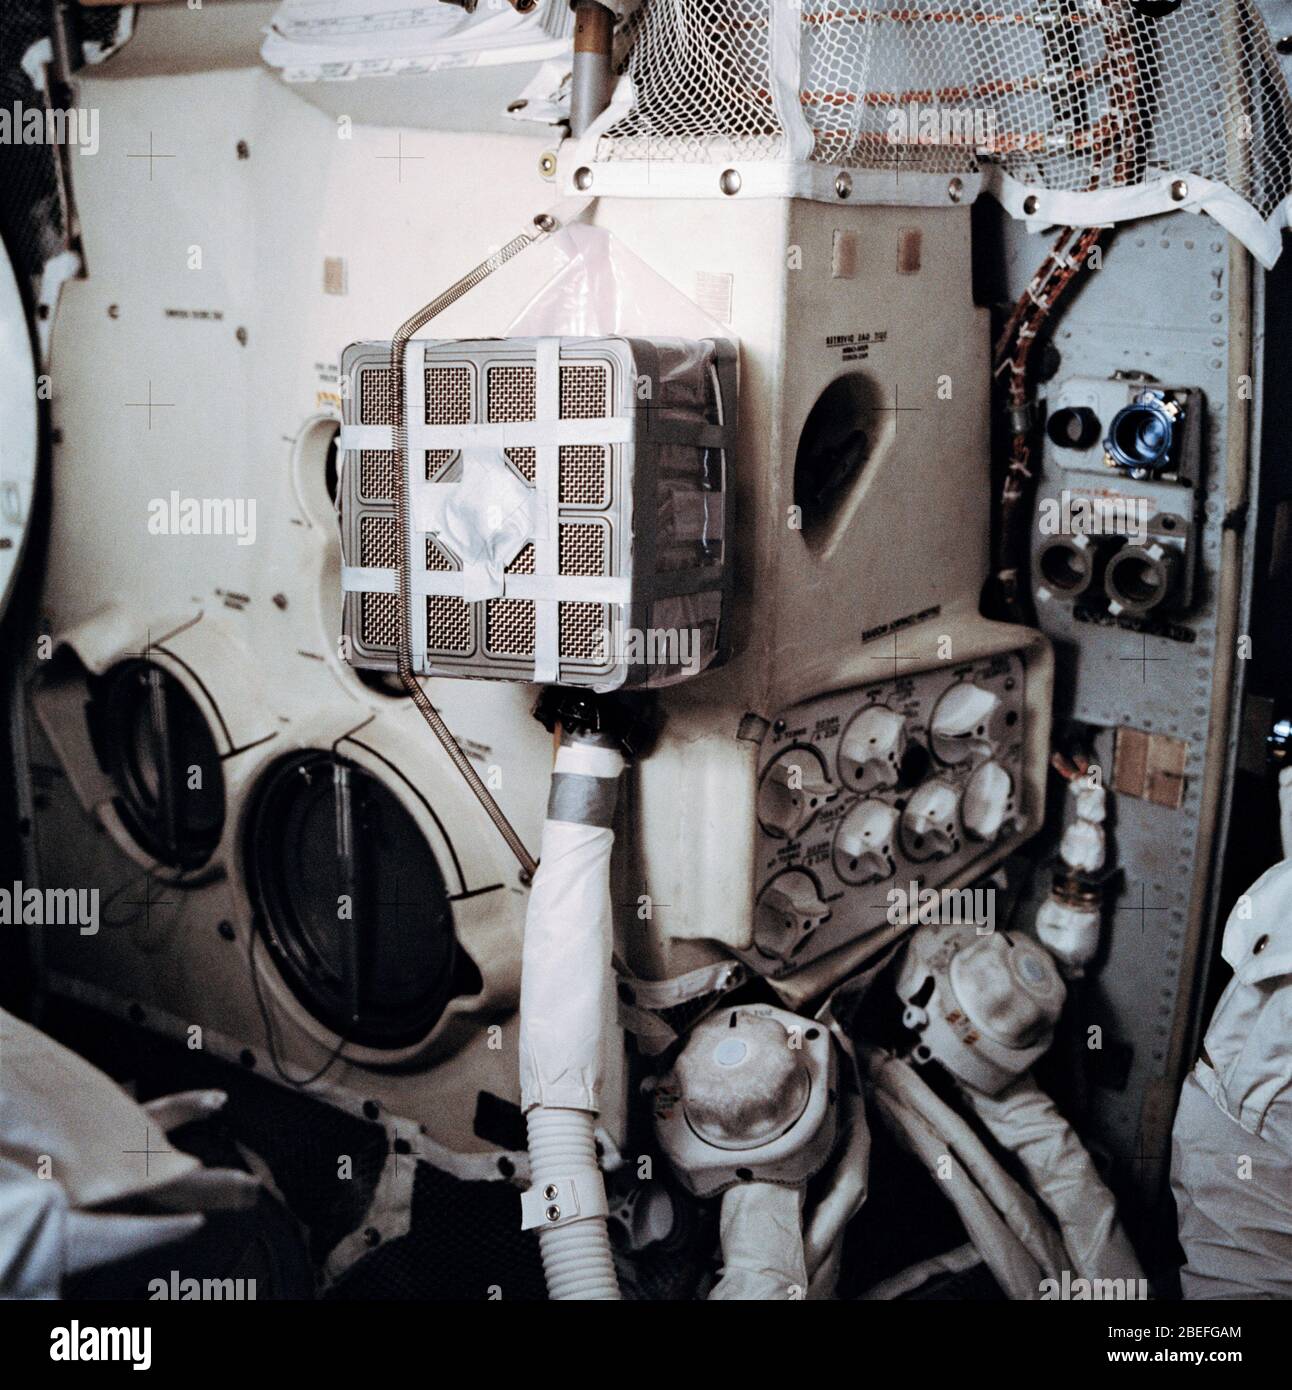 Eine Innenansicht des Apollo 13 Mondlandemoduls (LM) zeigt die 'Mailbox', eine von der Jury manipulierte Anordnung, die die Astronauten für die Verwendung der Lithium-Hydroxid-Kanister des Command Module (CM) zur Abtrennung von Kohlendioxid aus dem LM gebaut haben. Lithiumhydroxid wird verwendet, um CO2 aus der Atmosphäre des Raumschiffs zu schrubben. Apollo 13, gestartet am 11. April 1970, war die dritte Mission der NASA mit Besatzungsmacht zum Mond. Zwei Tage später, am 13. April, während der Fahrt zur Mondoberfläche, führte ein Fehler im elektrischen System eines der Sauerstofftanks des Service-Moduls zu einer Explosion, die beide Sauerstofftanks zum Scheitern brachte und auch zu einem Verlust führte Stockfoto